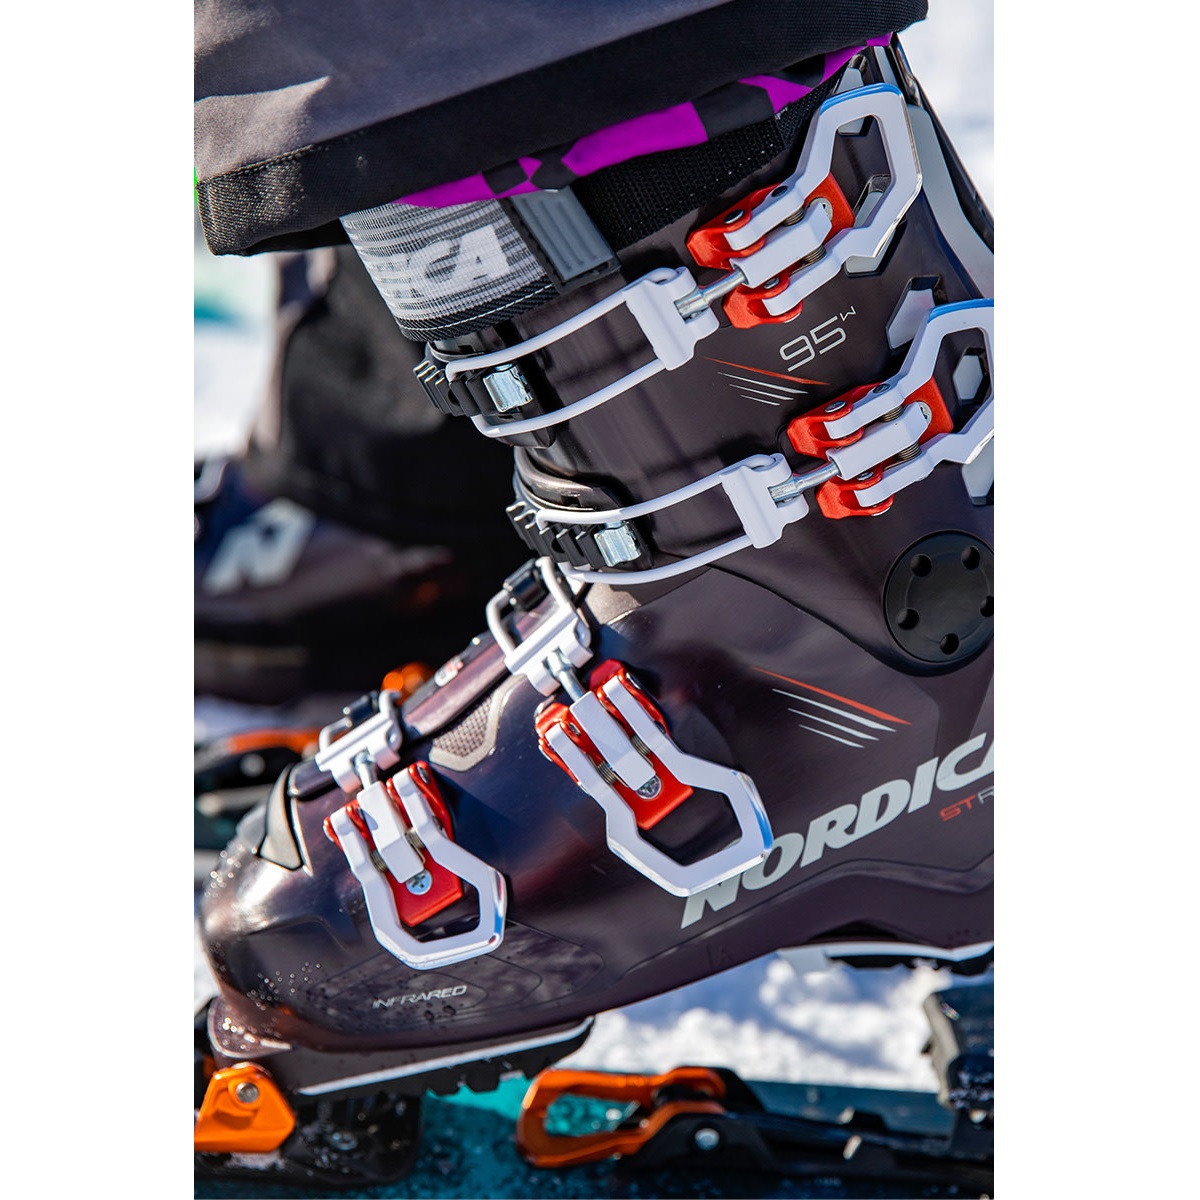 Ski Boots -  nordica STRIDER 95 W DYN